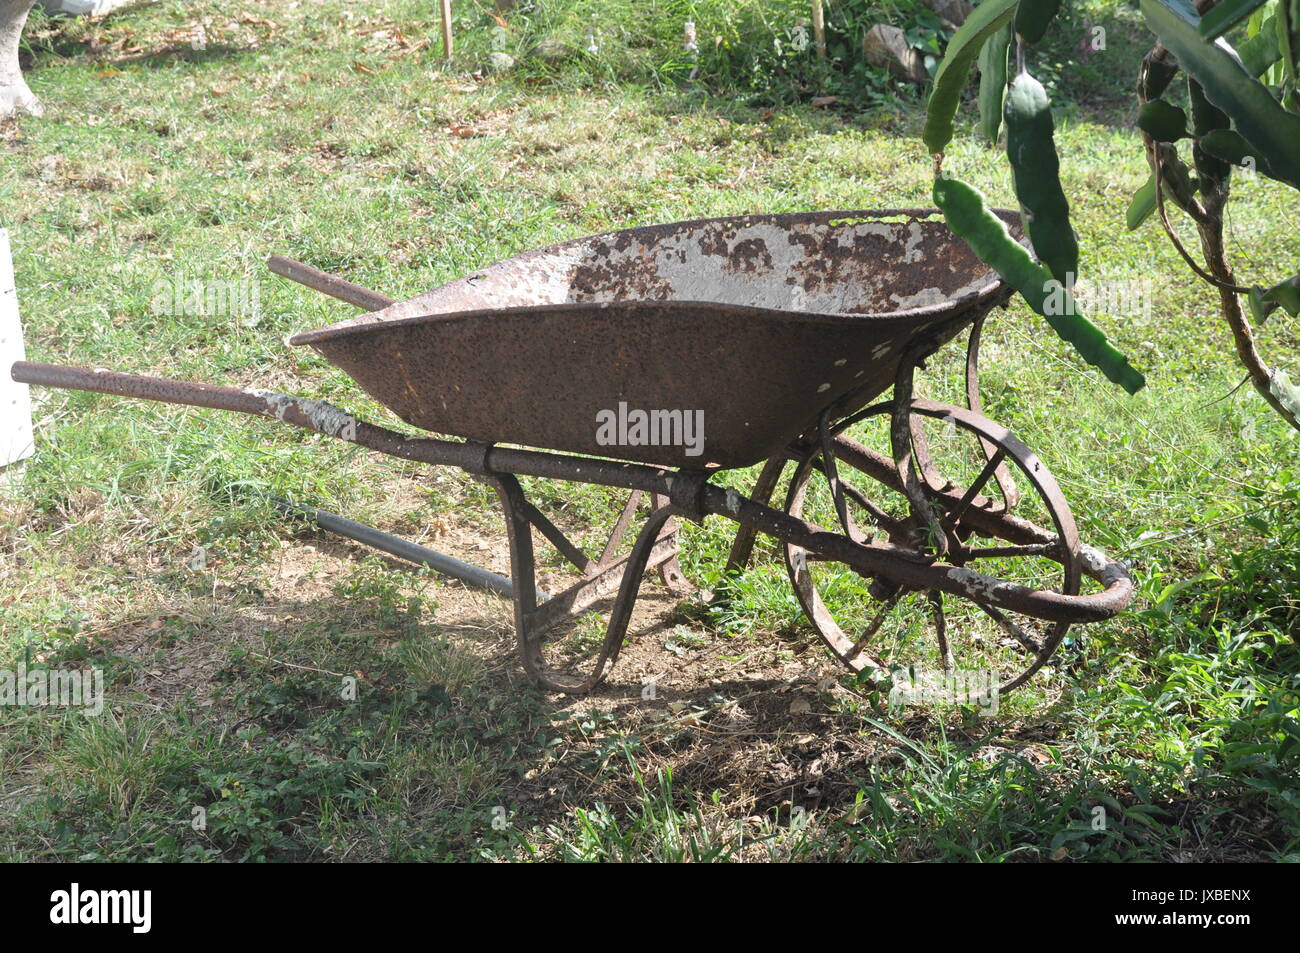 Antica carriola immagini e fotografie stock ad alta risoluzione - Alamy